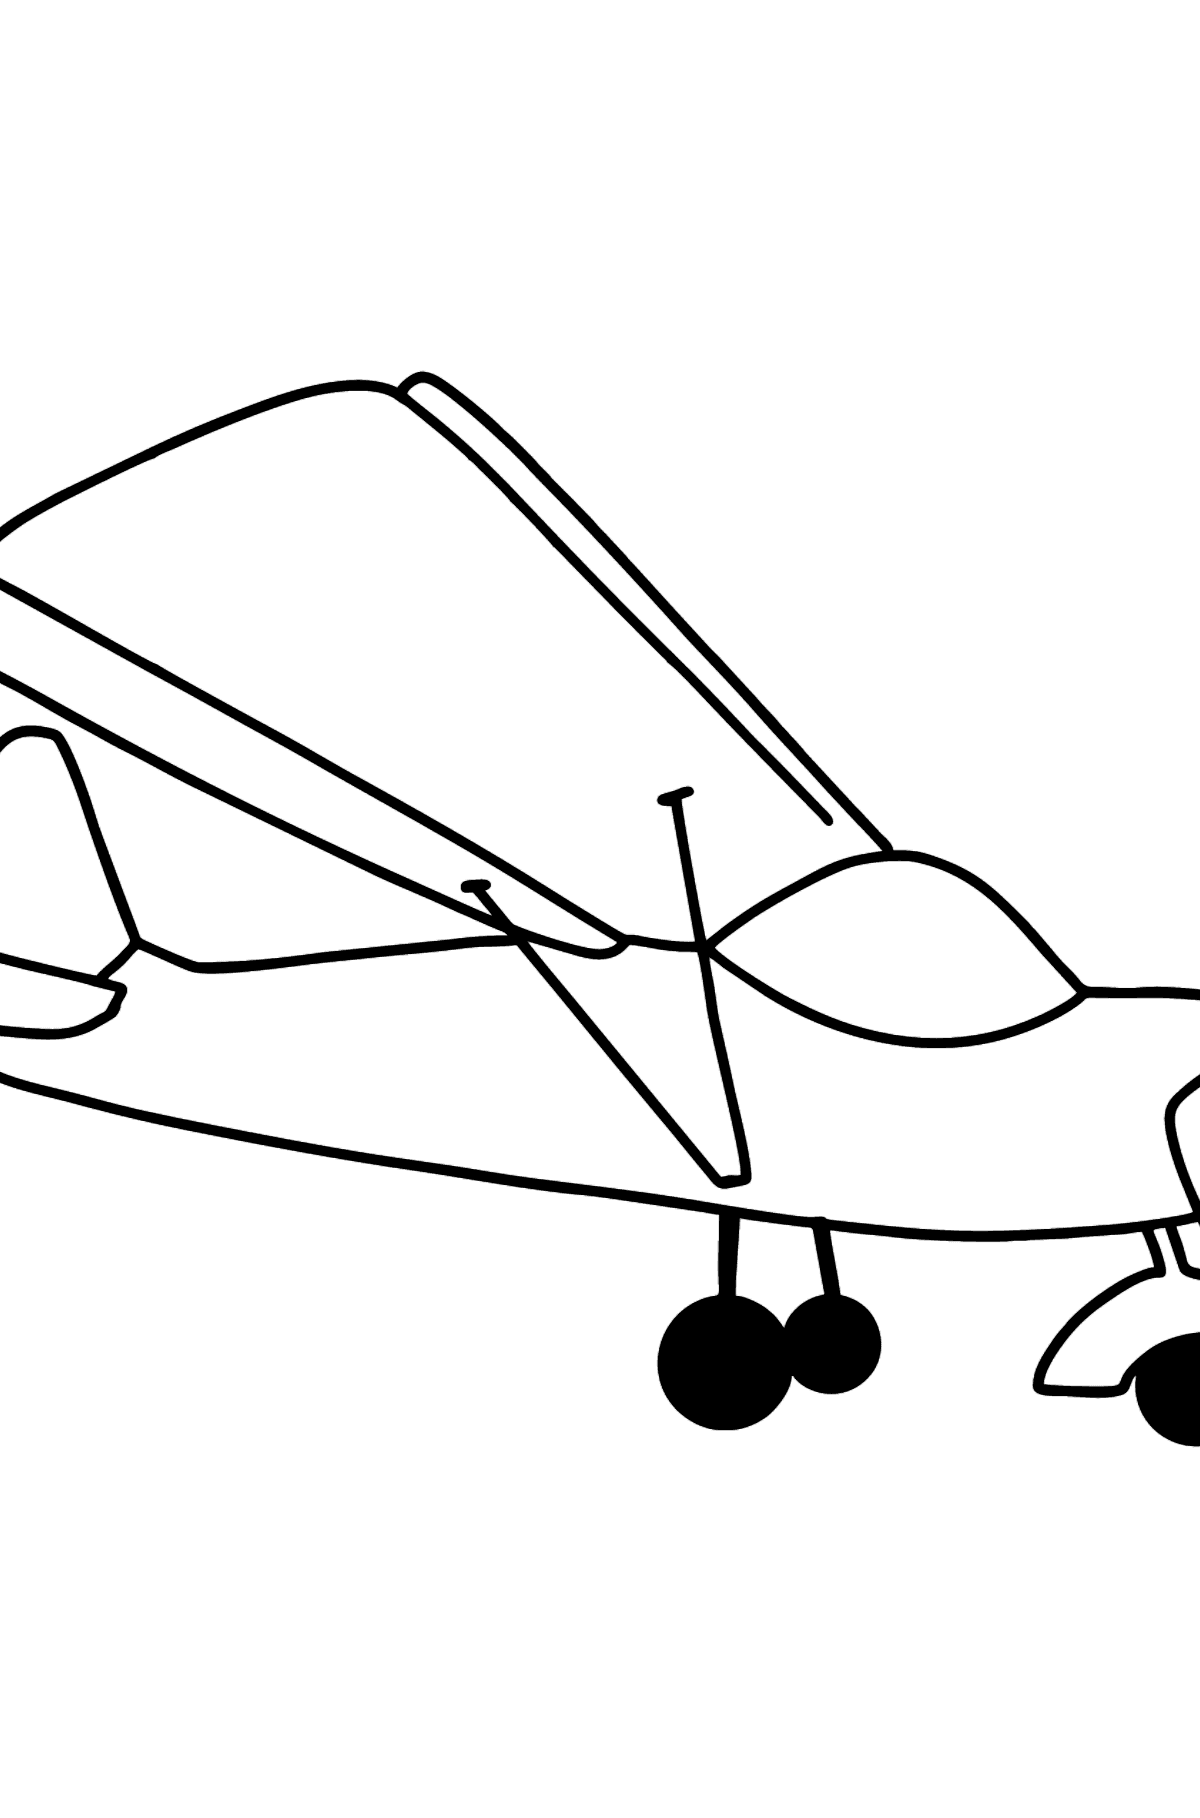 Tegning til fargelegging lite fly - Tegninger til fargelegging for barn